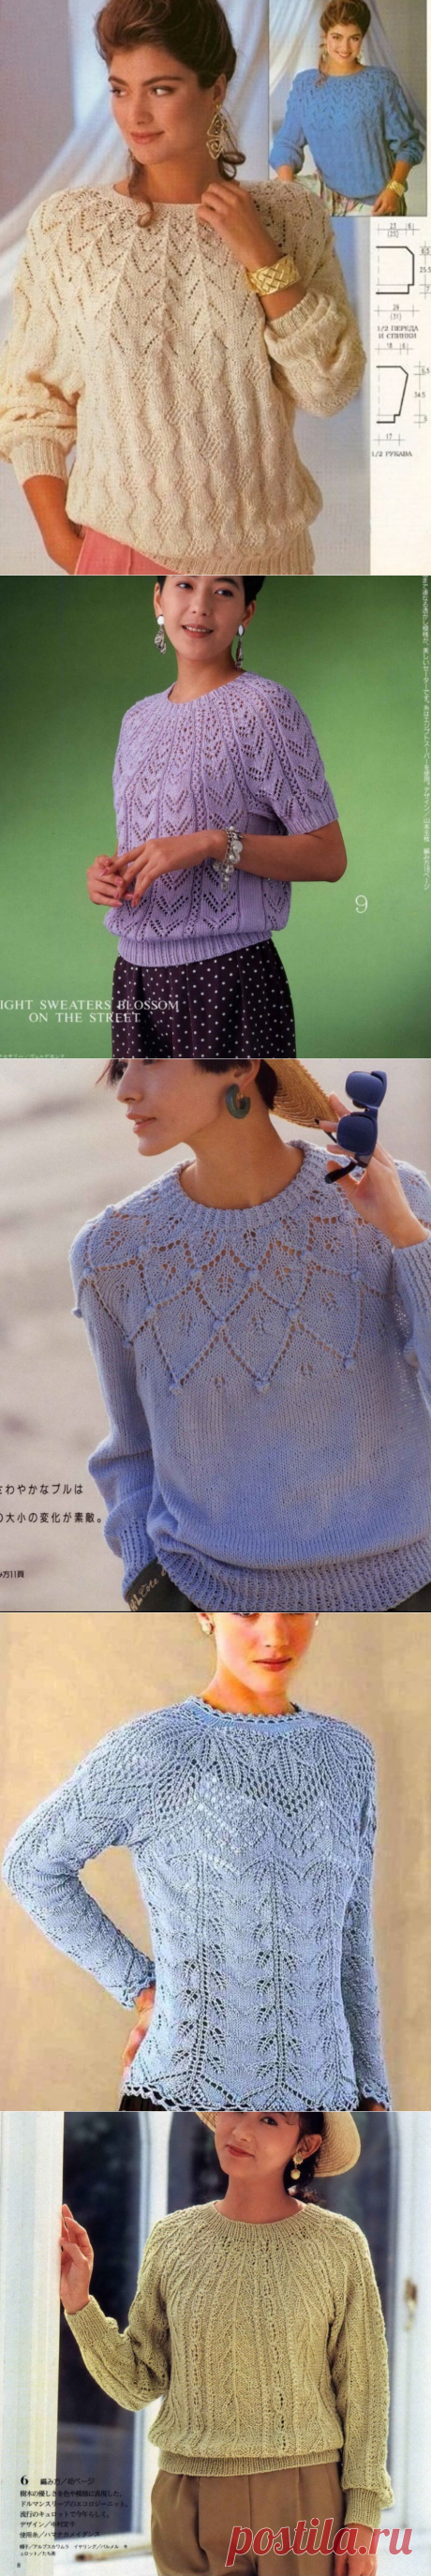 Любимые пуловеры с круглой кокеткой спицами 🌺 | Asha. Вязание и дизайн.🌶Сонник. | Яндекс Дзен